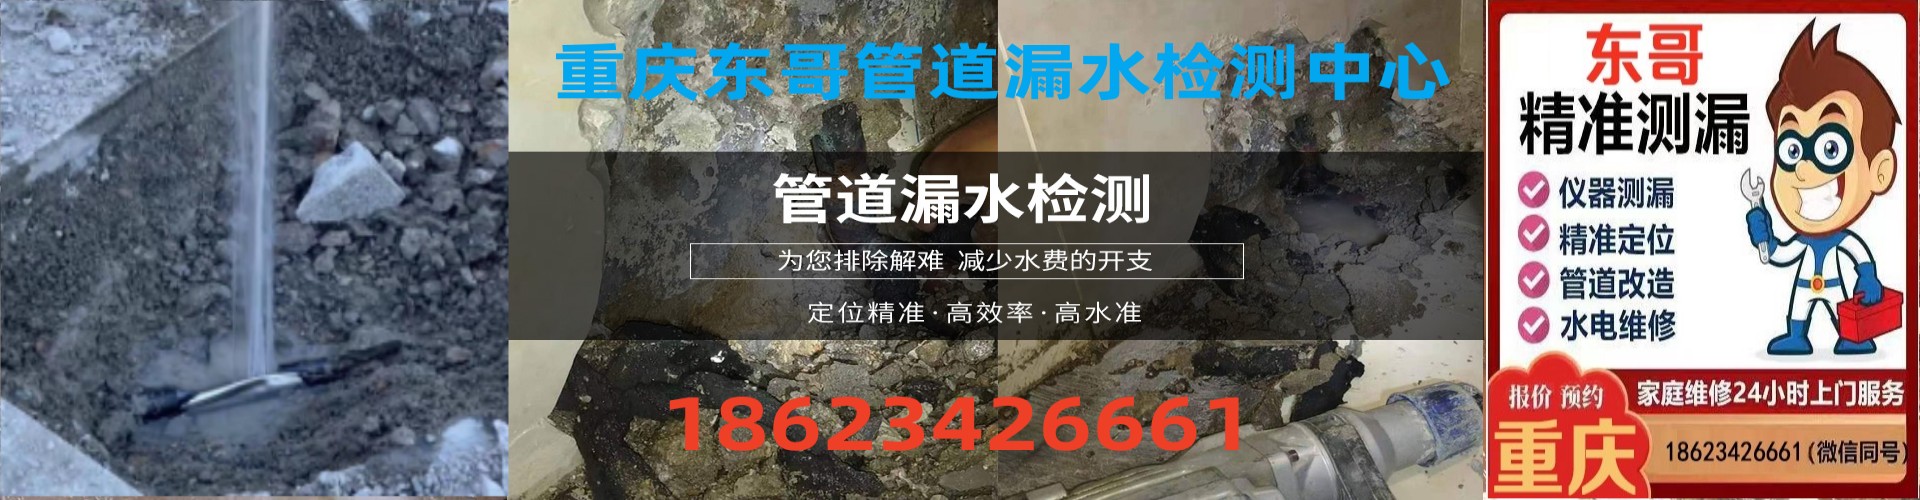 重庆东哥管道漏水检测中心